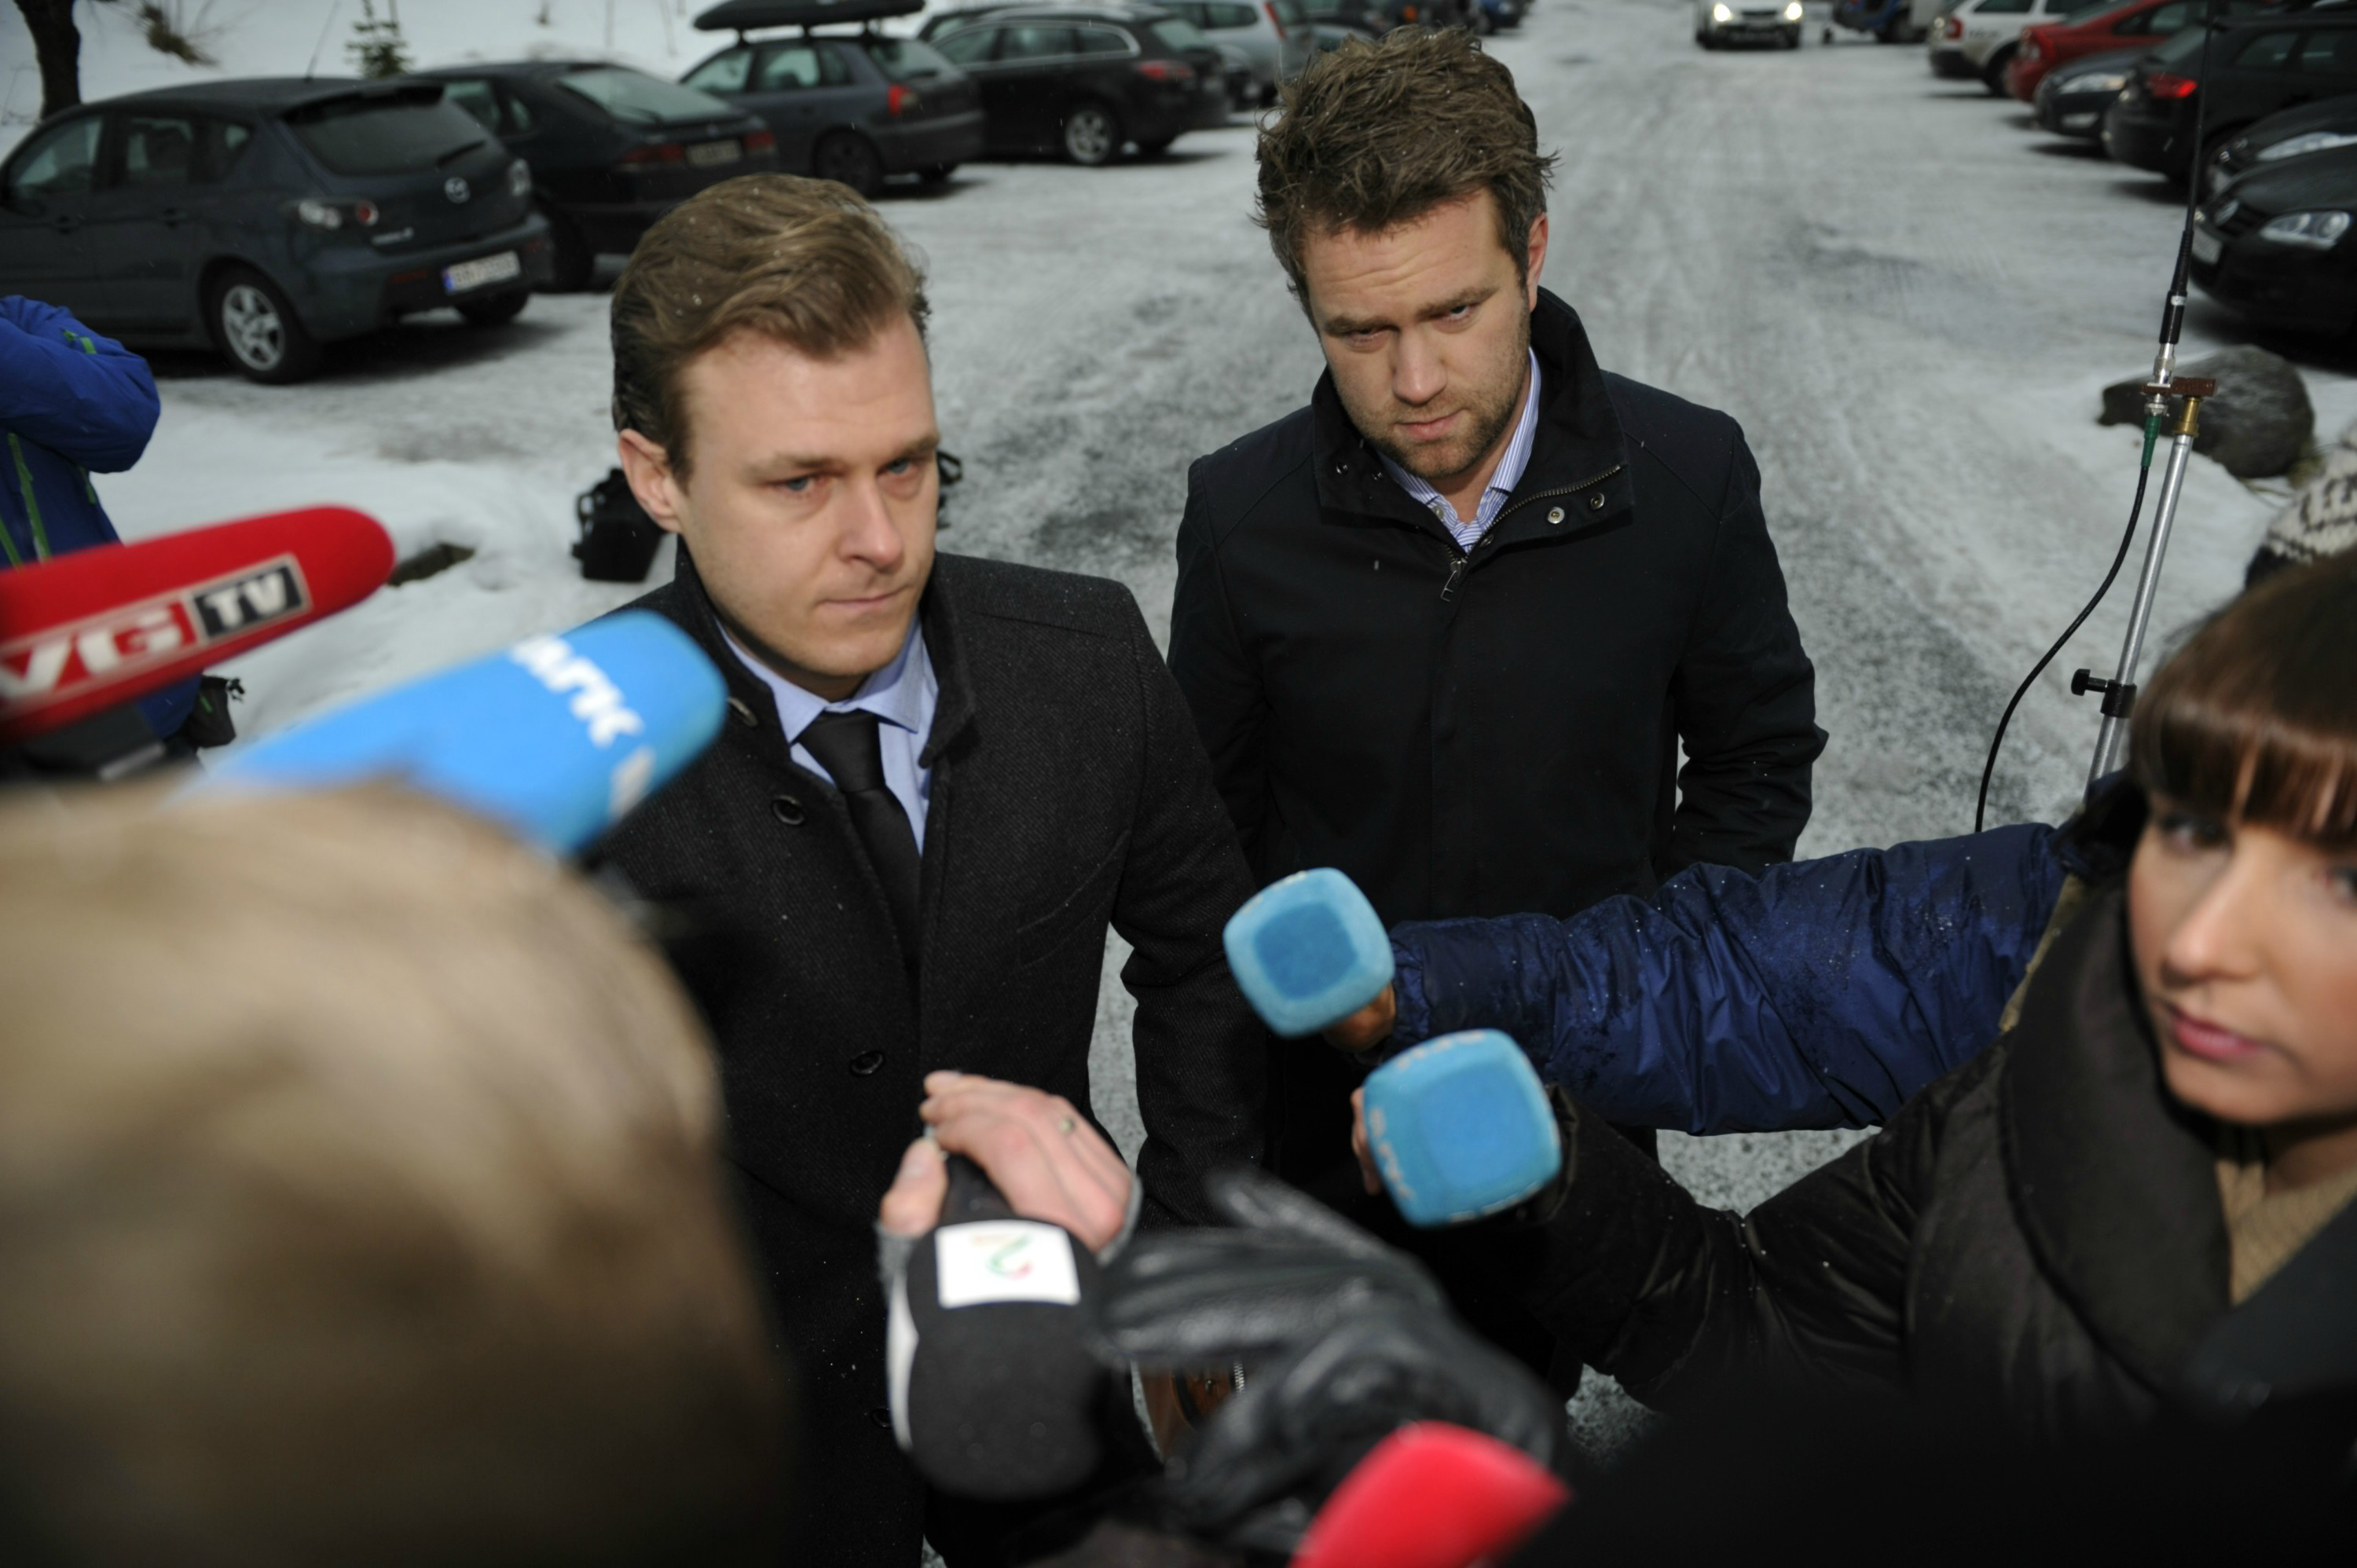 Försvarsadvokaterna Odd Ivar Grøn och Tord Jordet på väg in till Ila fängelset där Anders Behring Breivik ska få åtalet upprläst av en tjänsteman från polisens 22 juli grupp